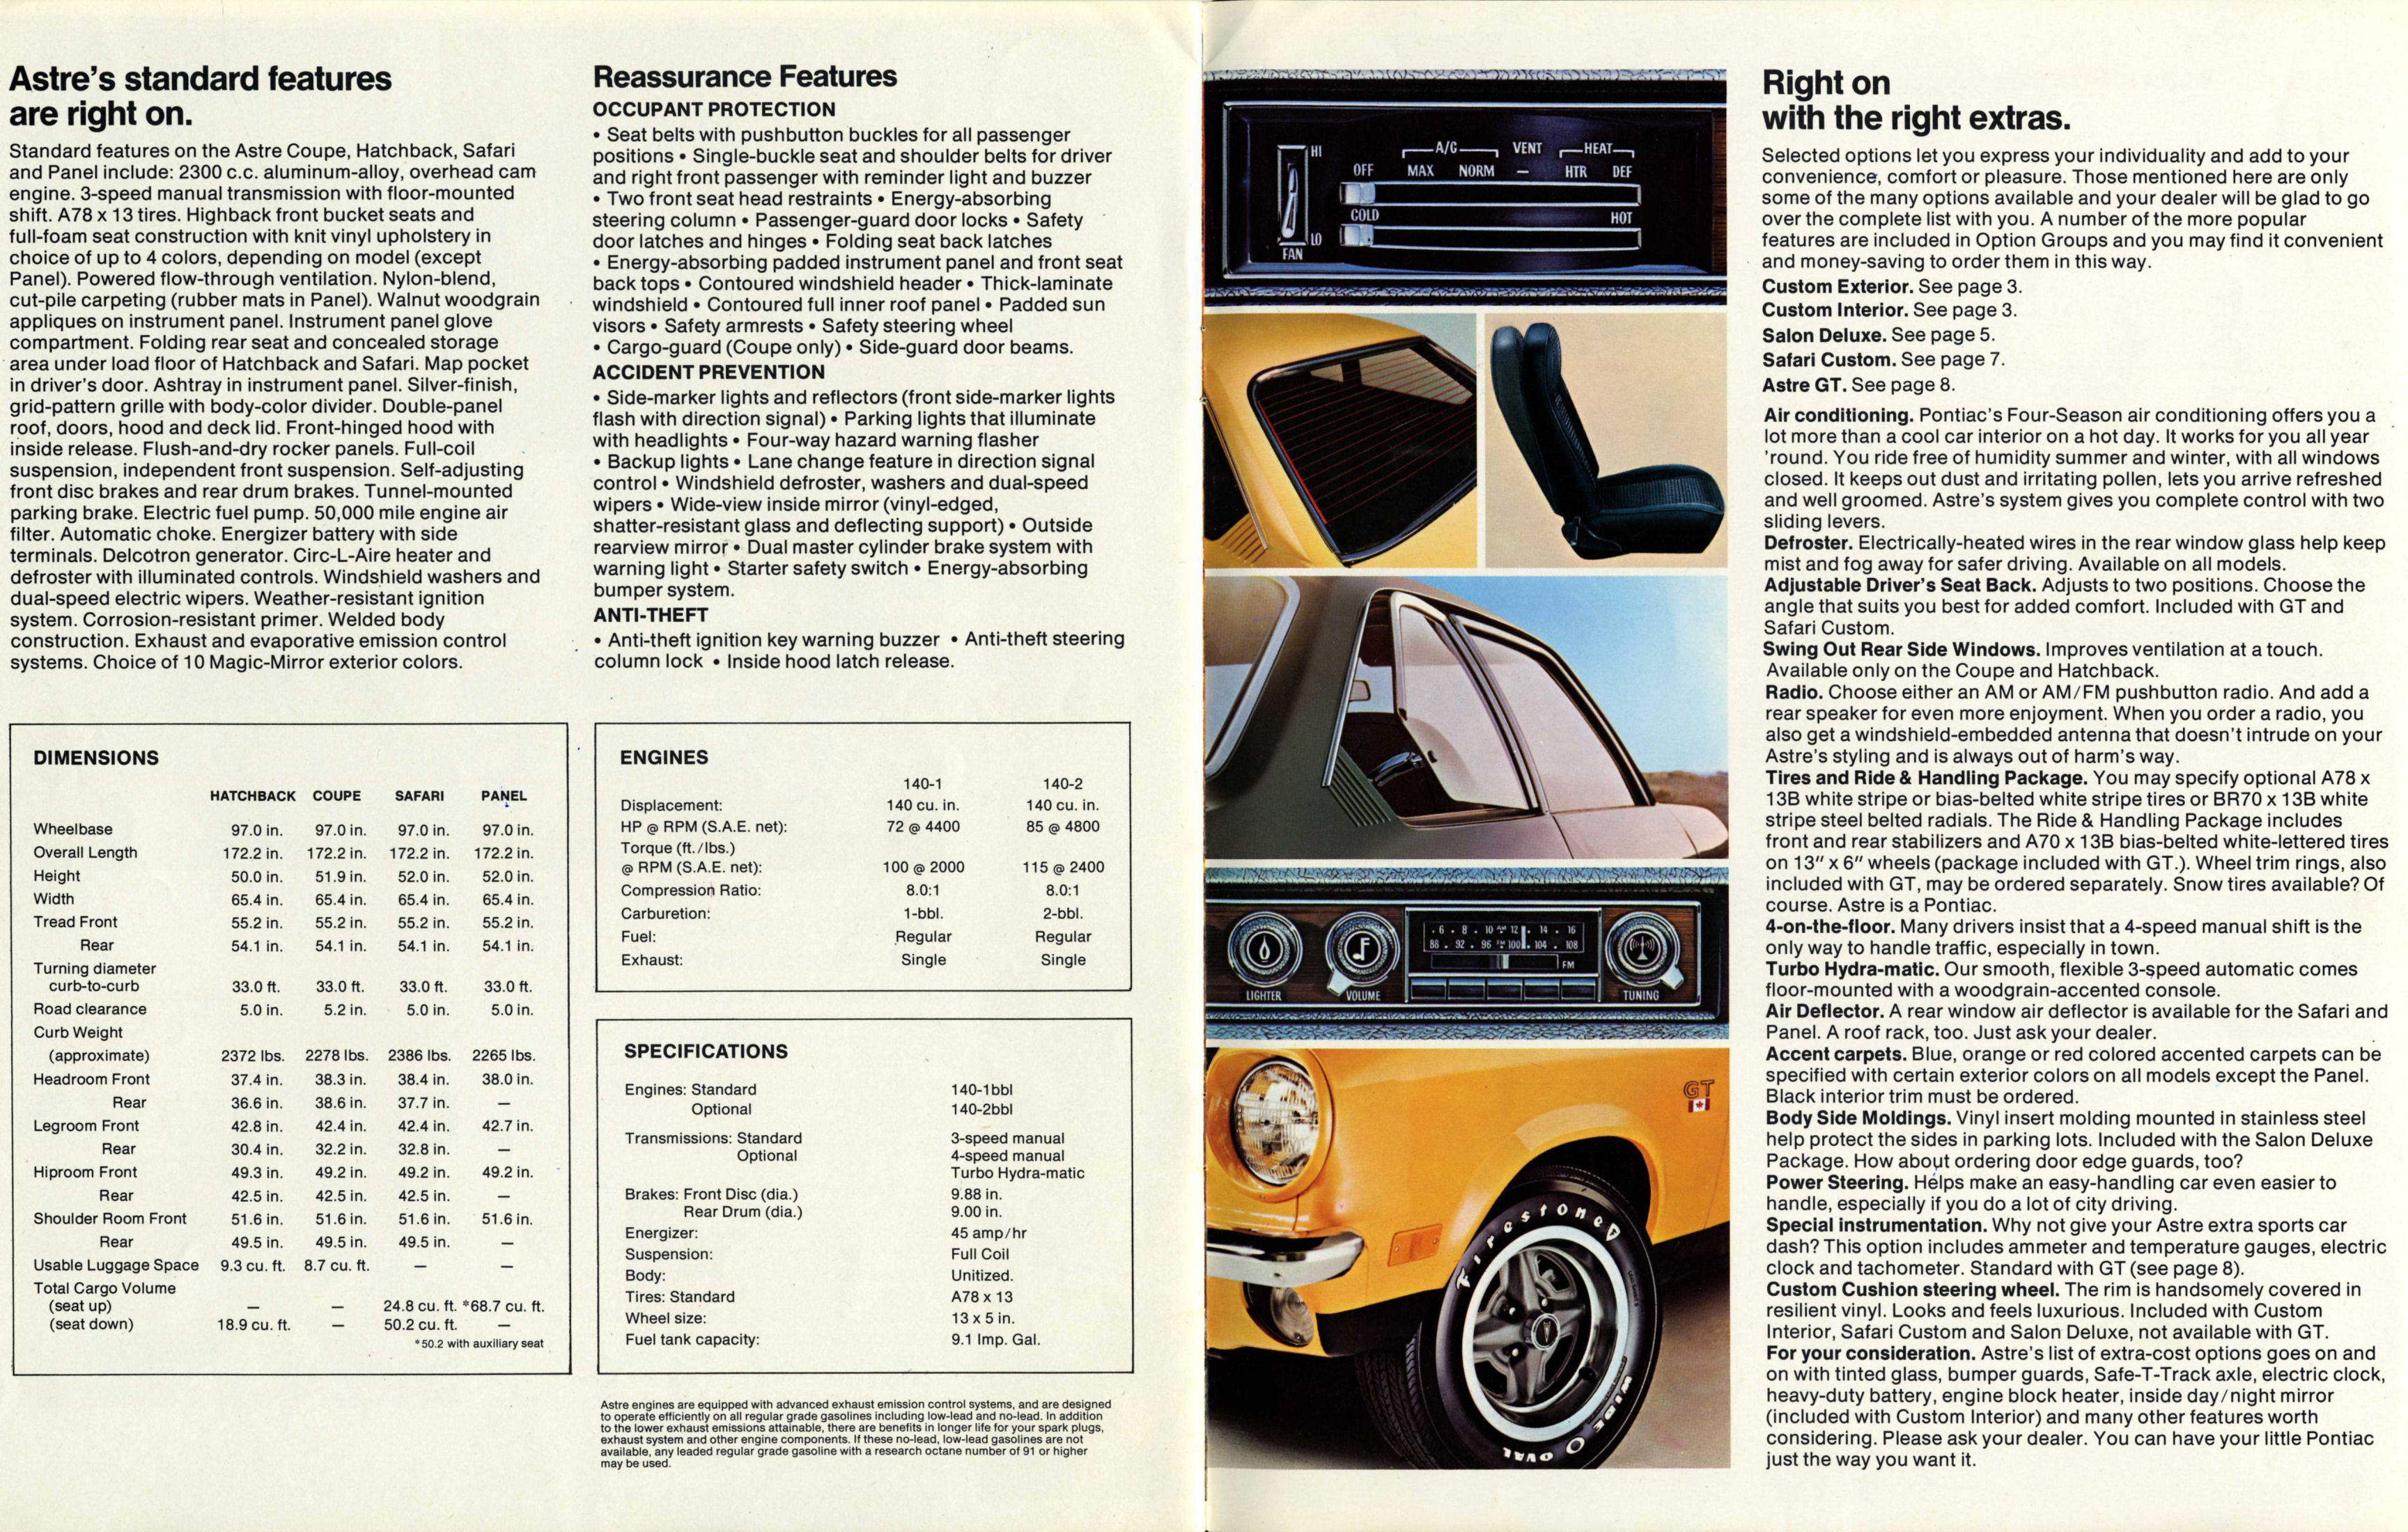 1973_Pontiac_Astre-10-11